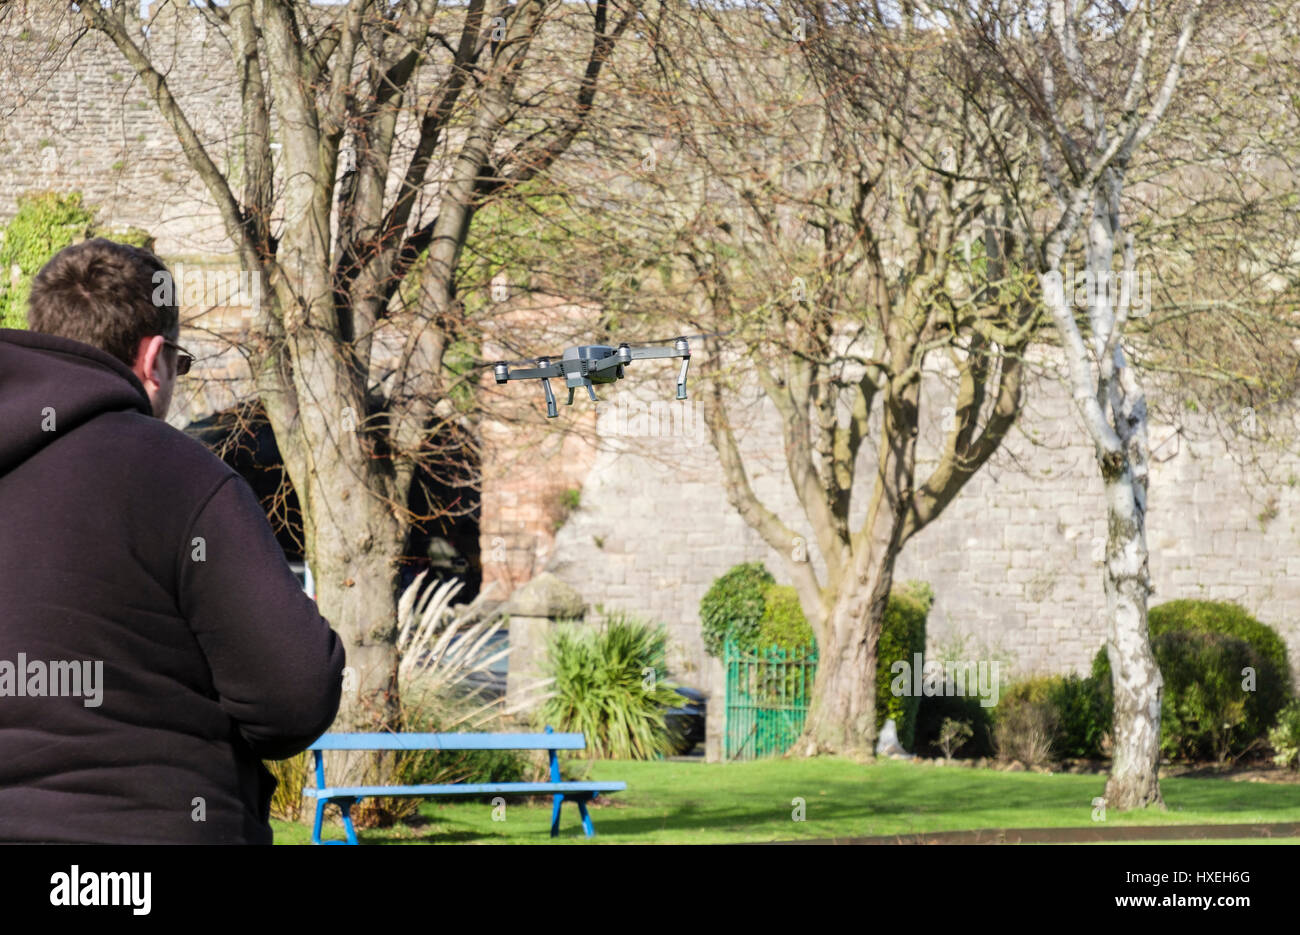 Der Mensch fliegen einer ferngesteuerten kleines Spielzeug Drohne in einem Park. Conwy, Wales, UK, Großbritannien Stockfoto